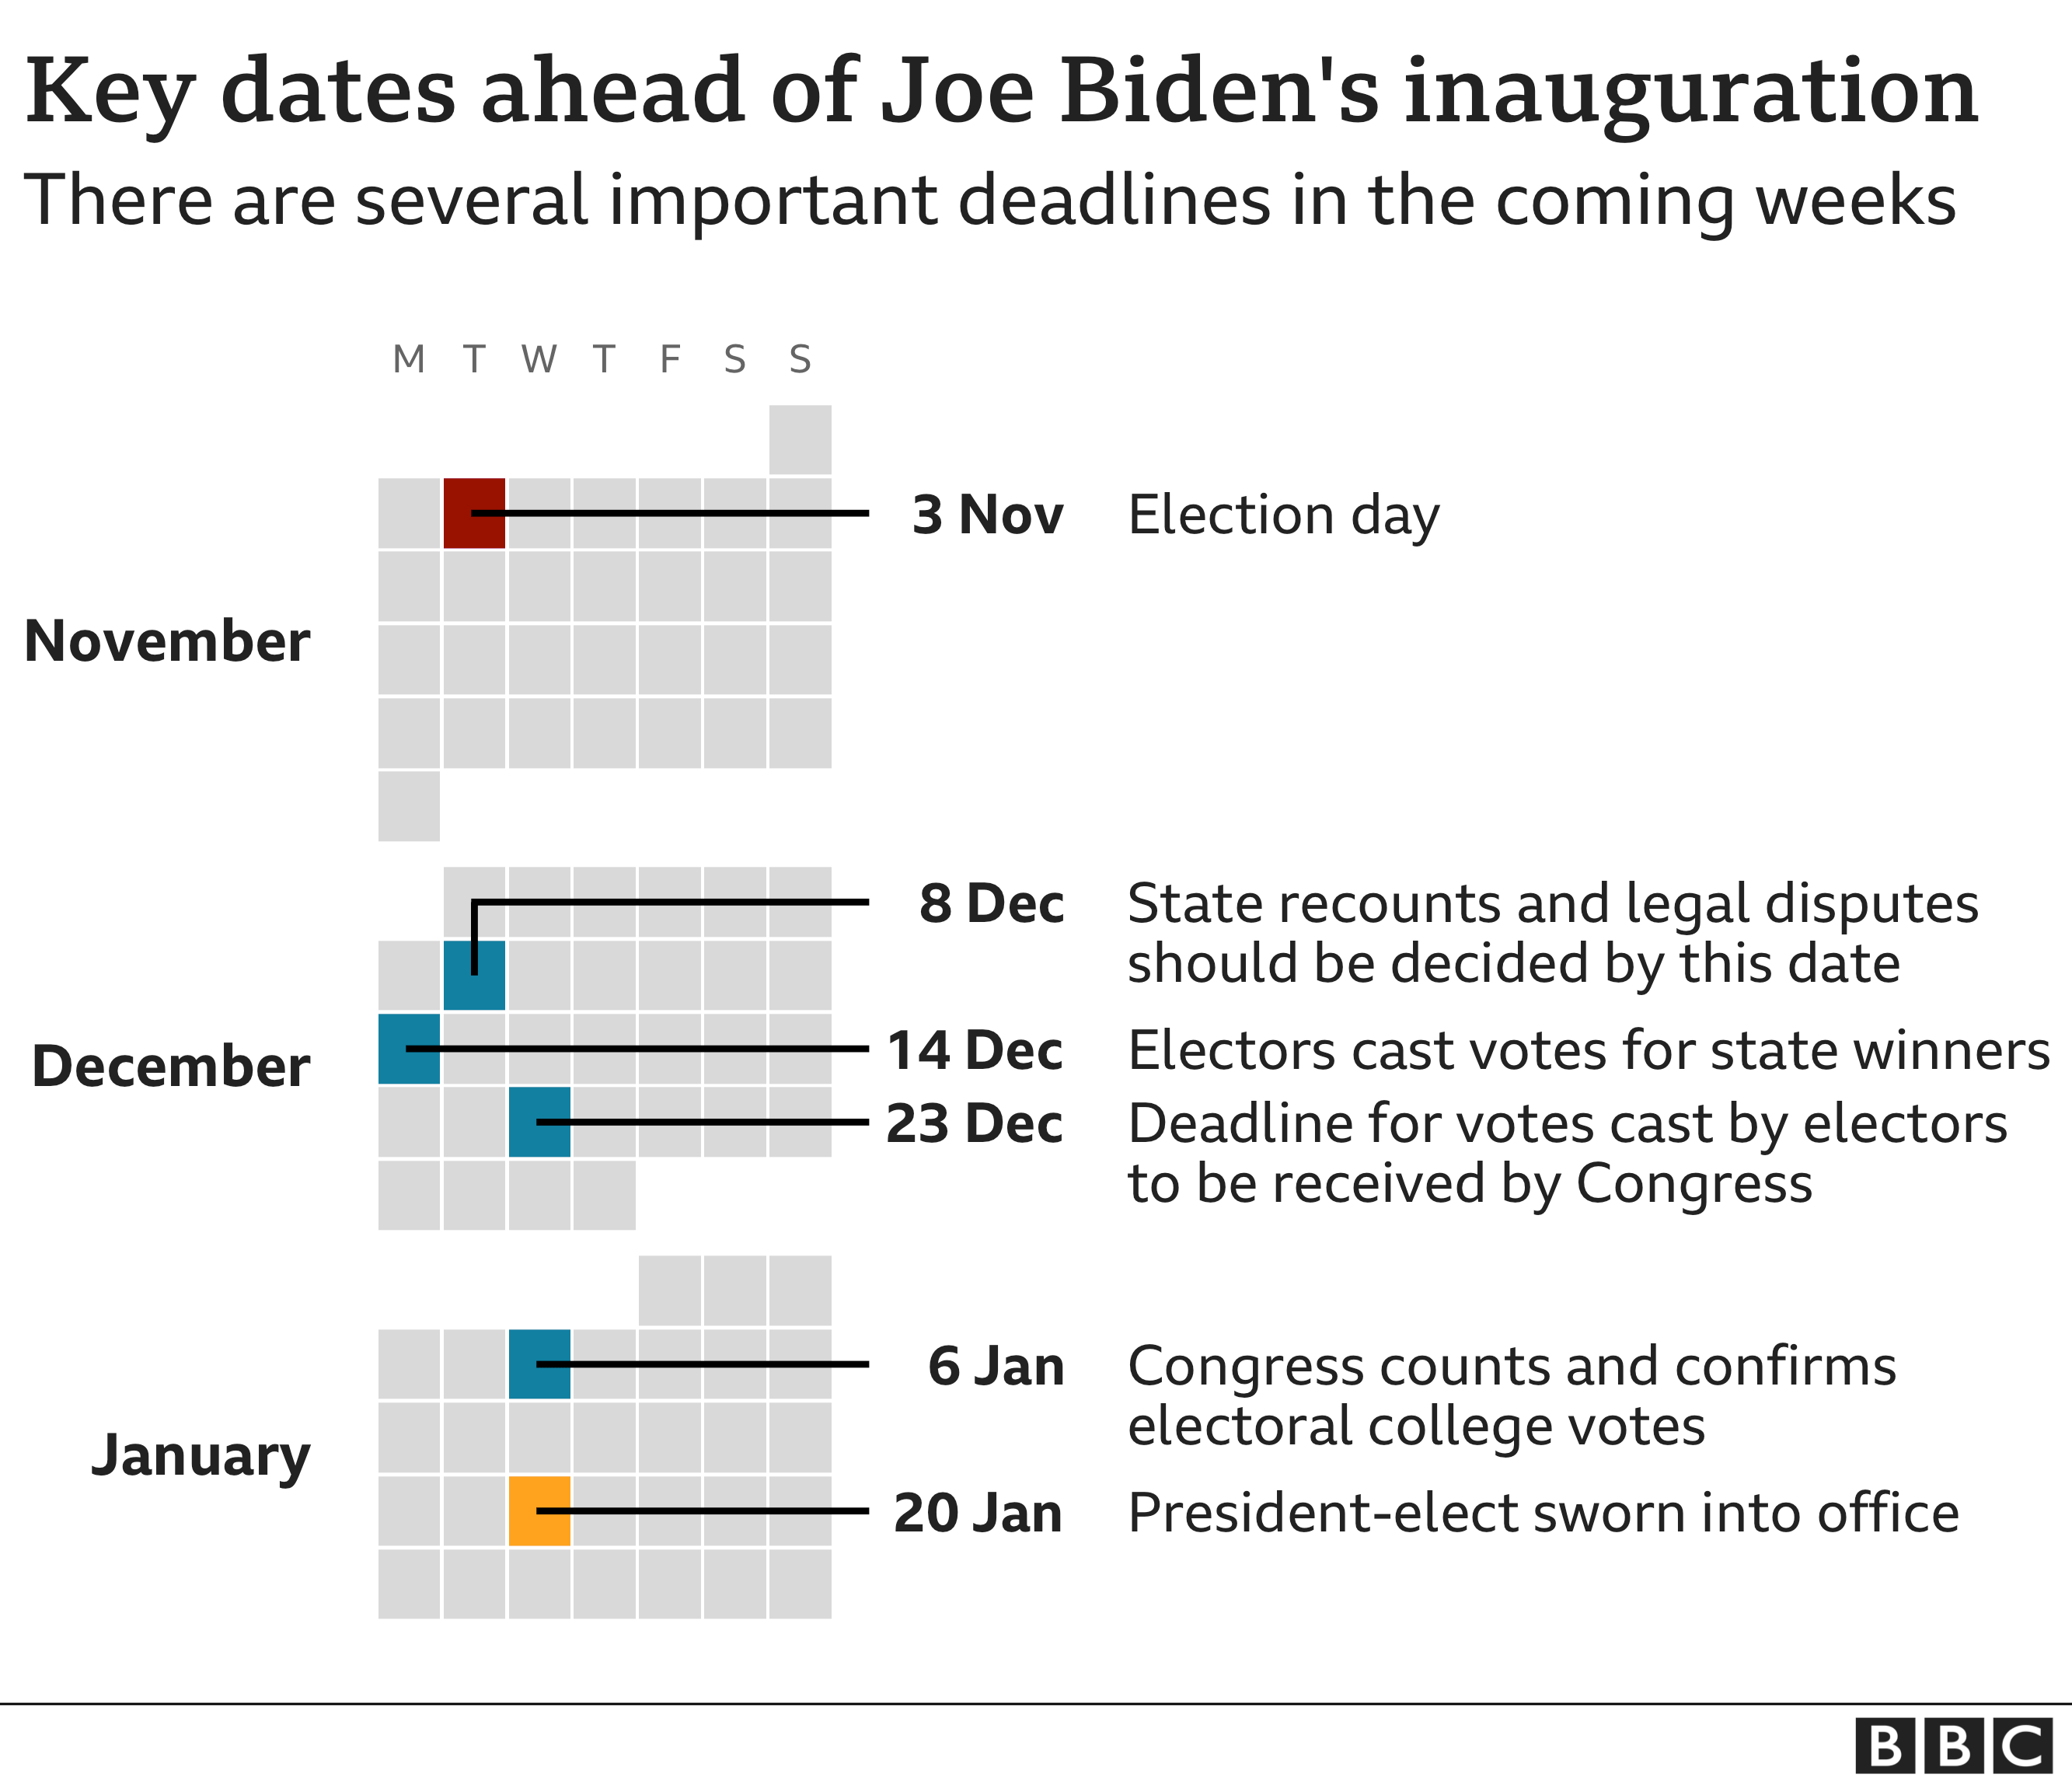 tärkeät päivämäärät ennen Joe Bidenin virkaanastujaisia